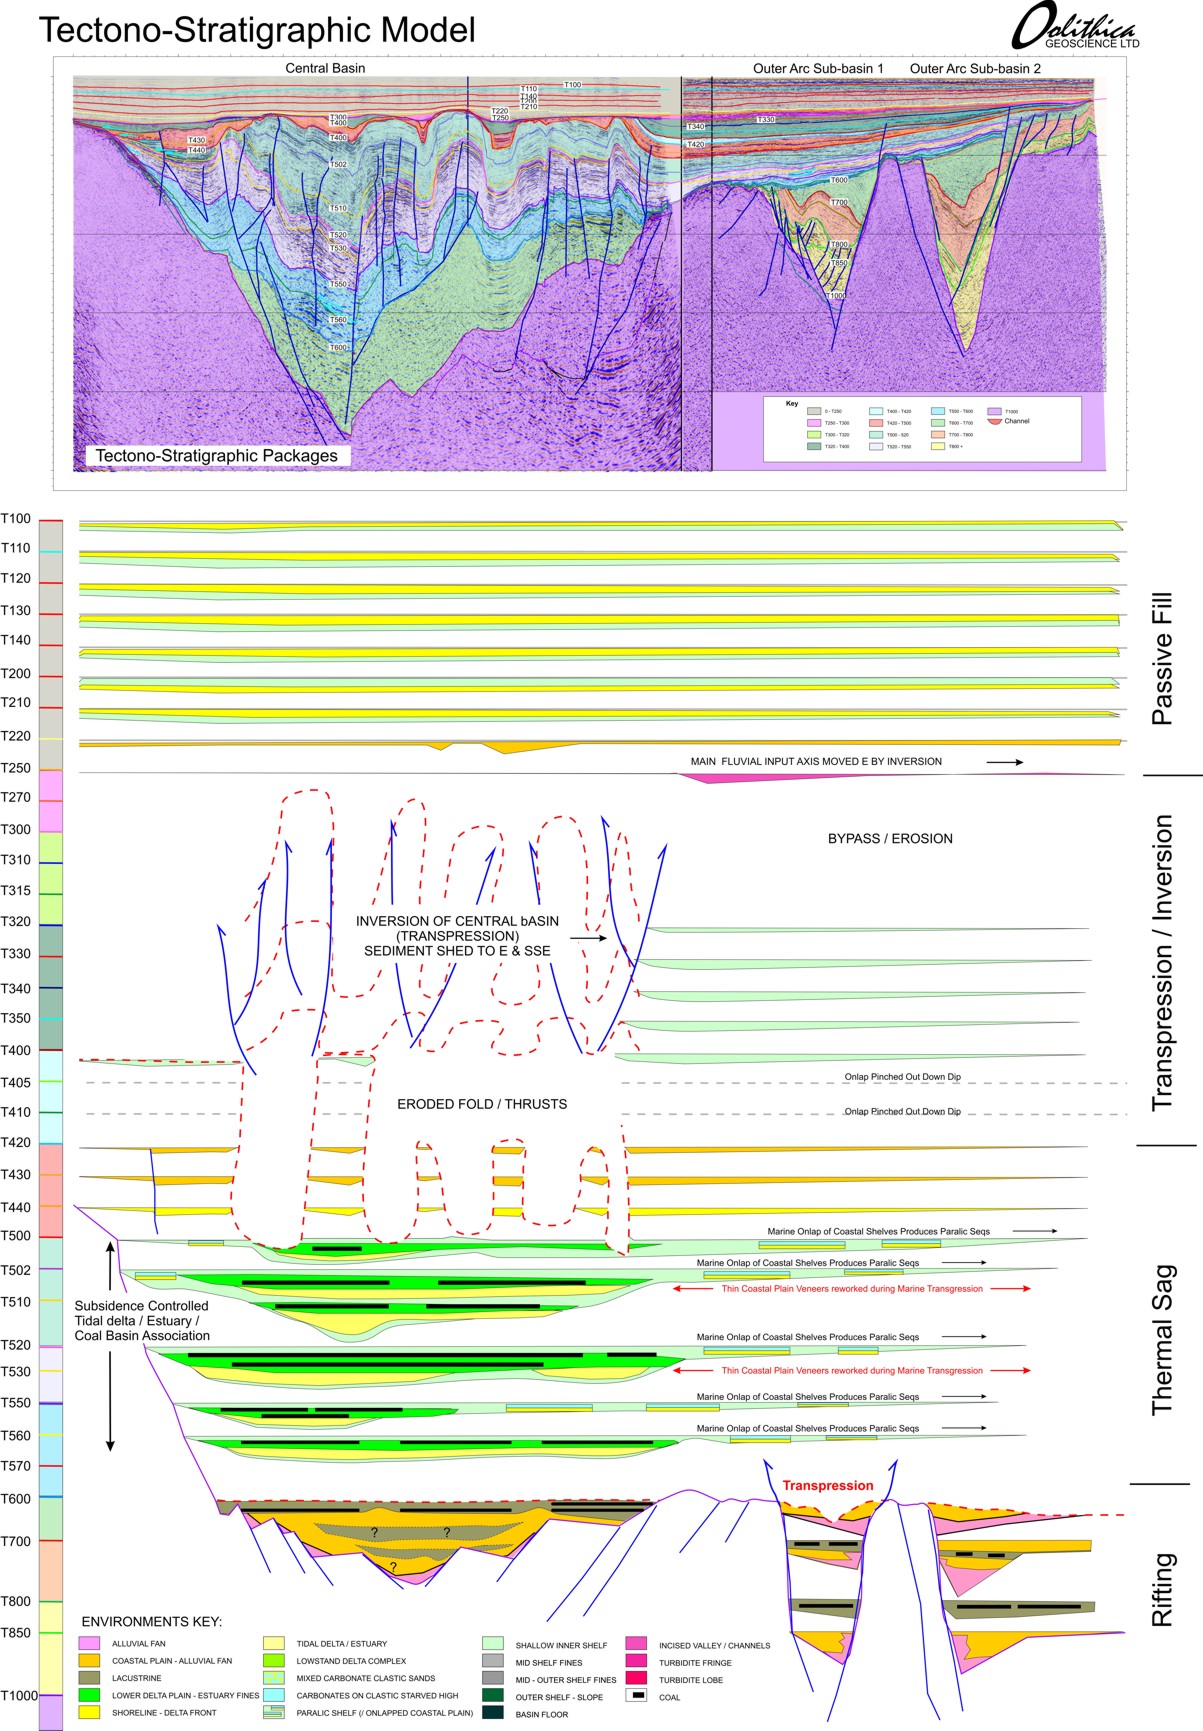 Tectono-stratigraphic and chronostratigraphic model